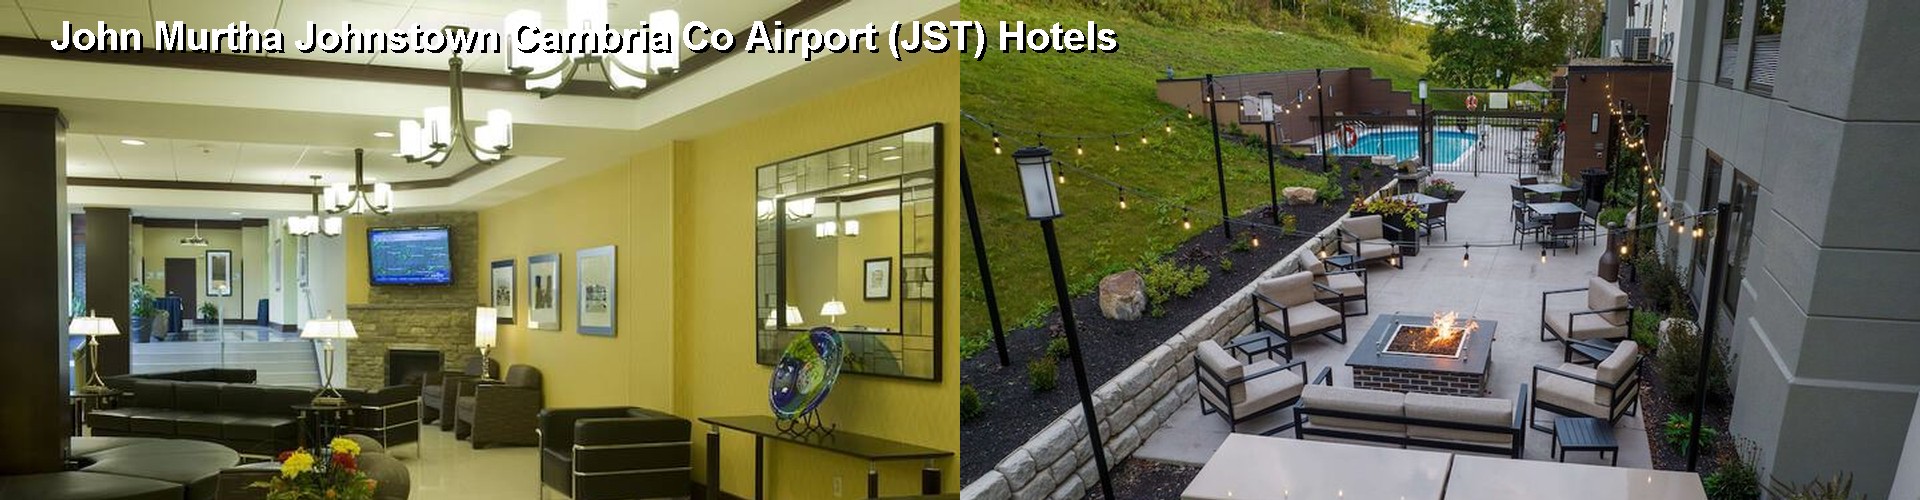 5 Best Hotels near John Murtha Johnstown Cambria Co Airport (JST)